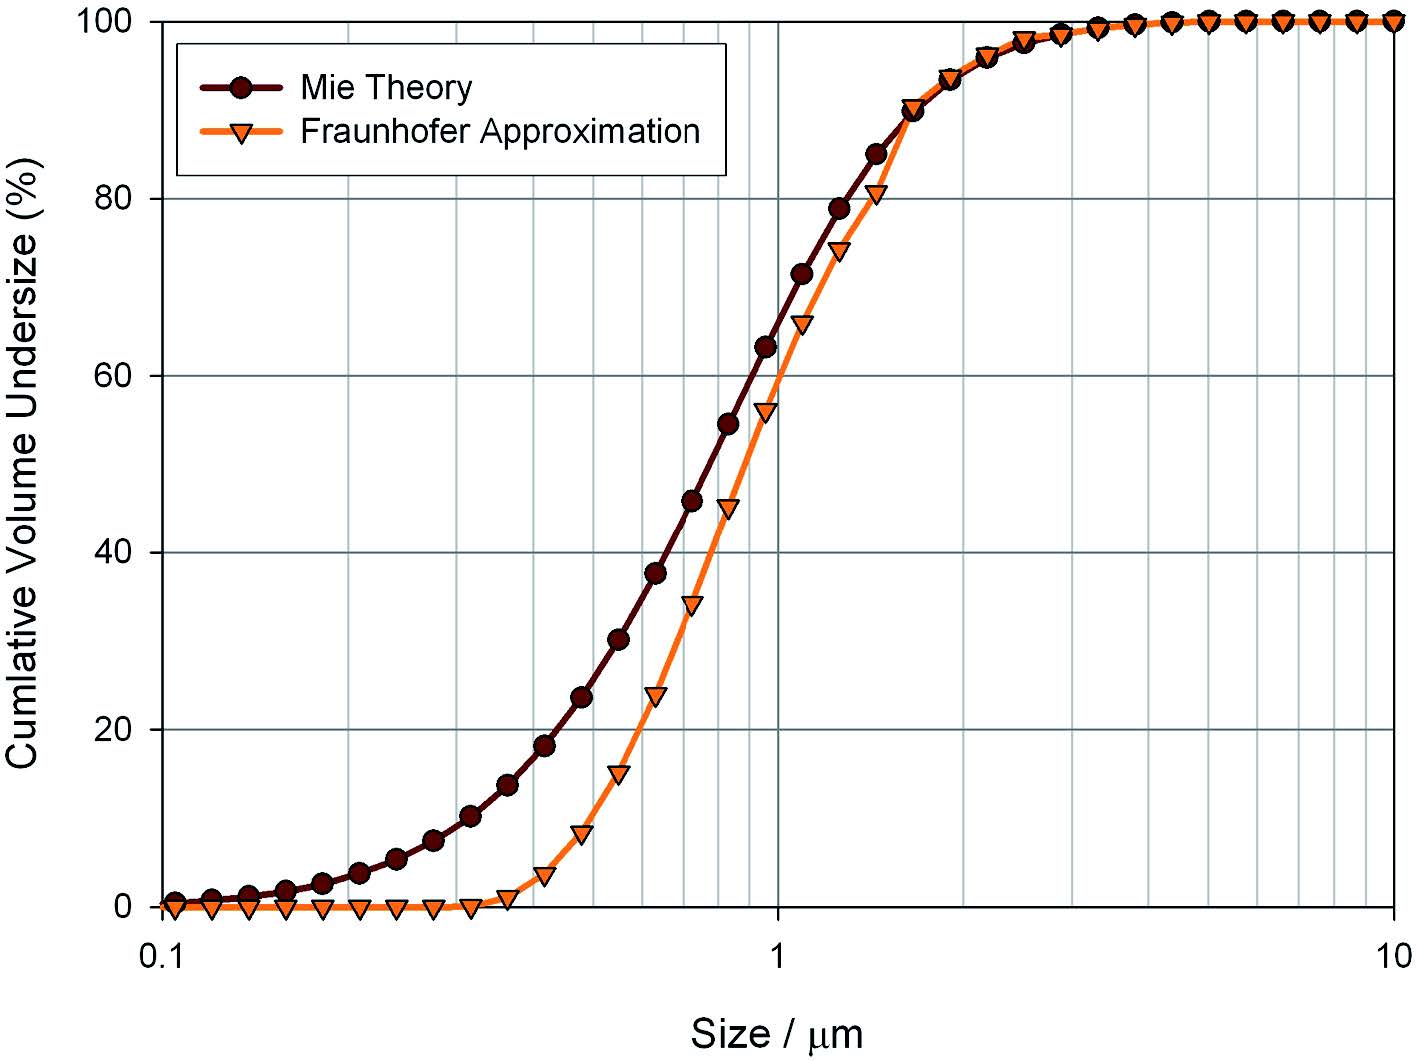 Měření uhličitanu vápenatého s použitím teorie Mie a Fraunhoferovy aproximace